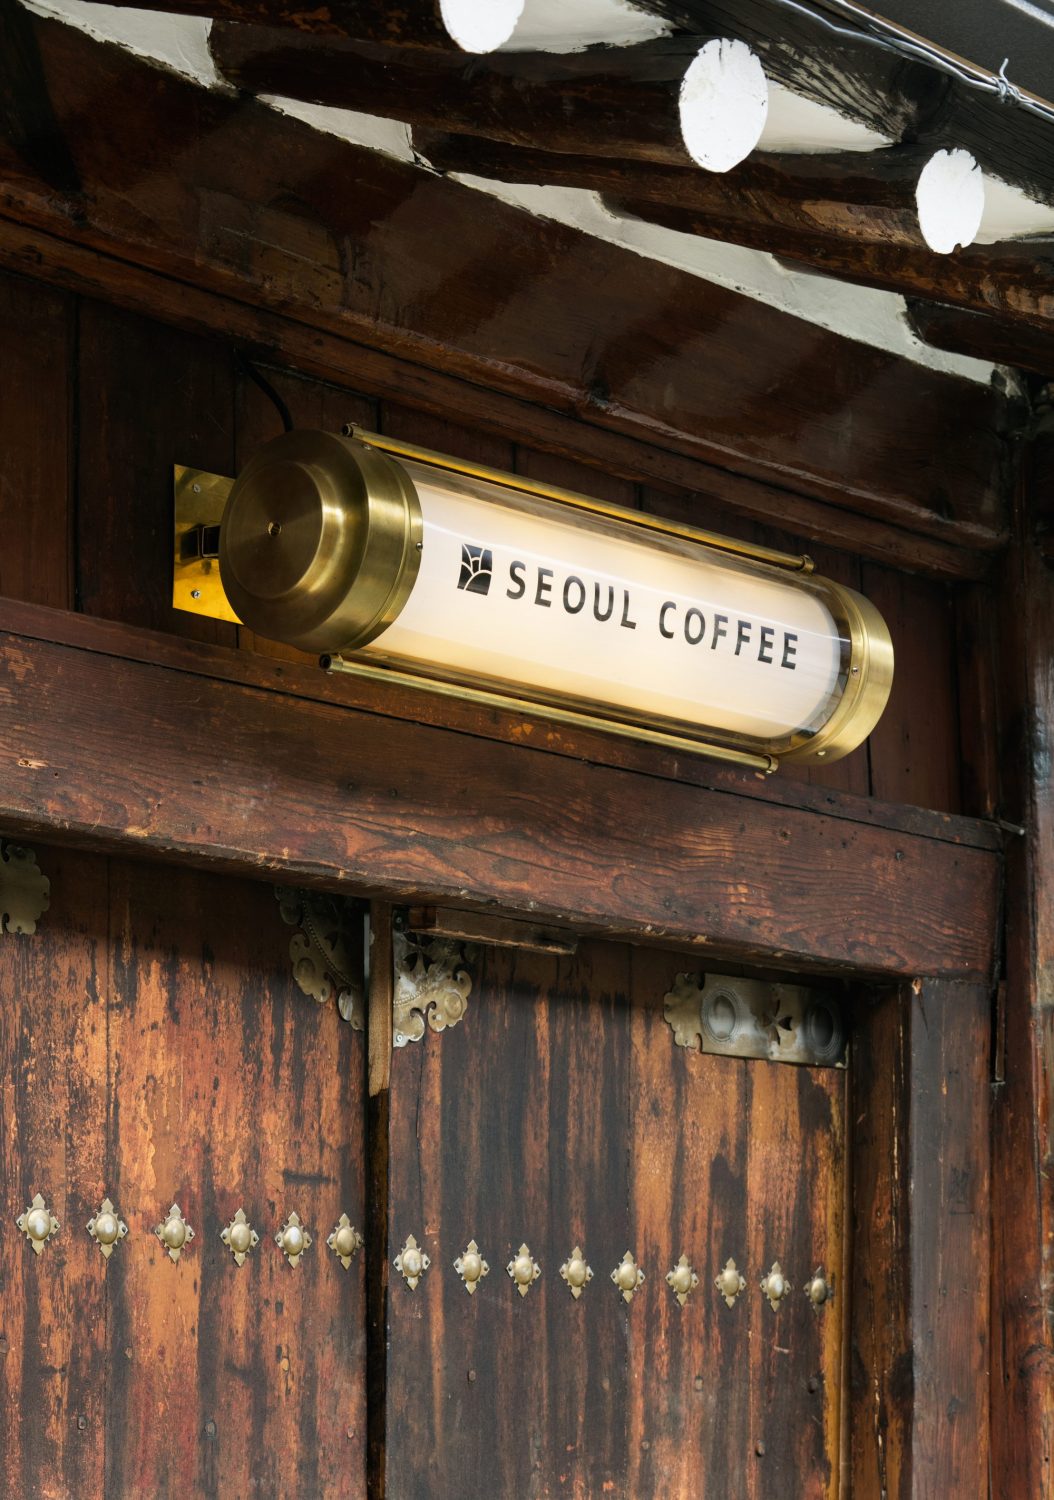 Seoul Coffee by LABOTORY